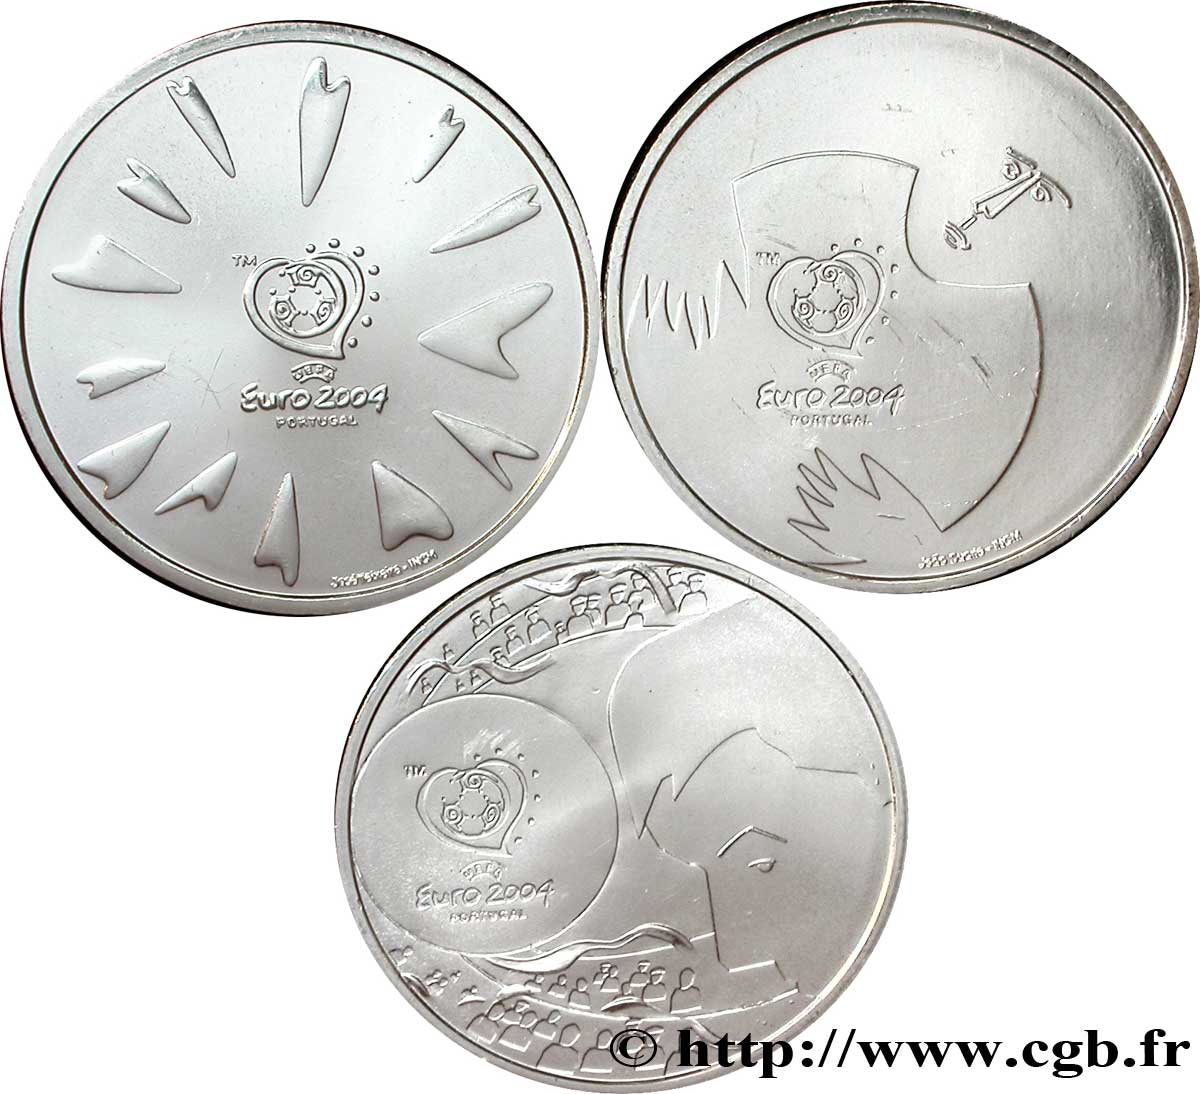 PORTOGALLO Lot 3 pièces 8 Euro UEFA 2004 - LE DÉFENSEUR- L AILIER- LE GOAL 2004 MS